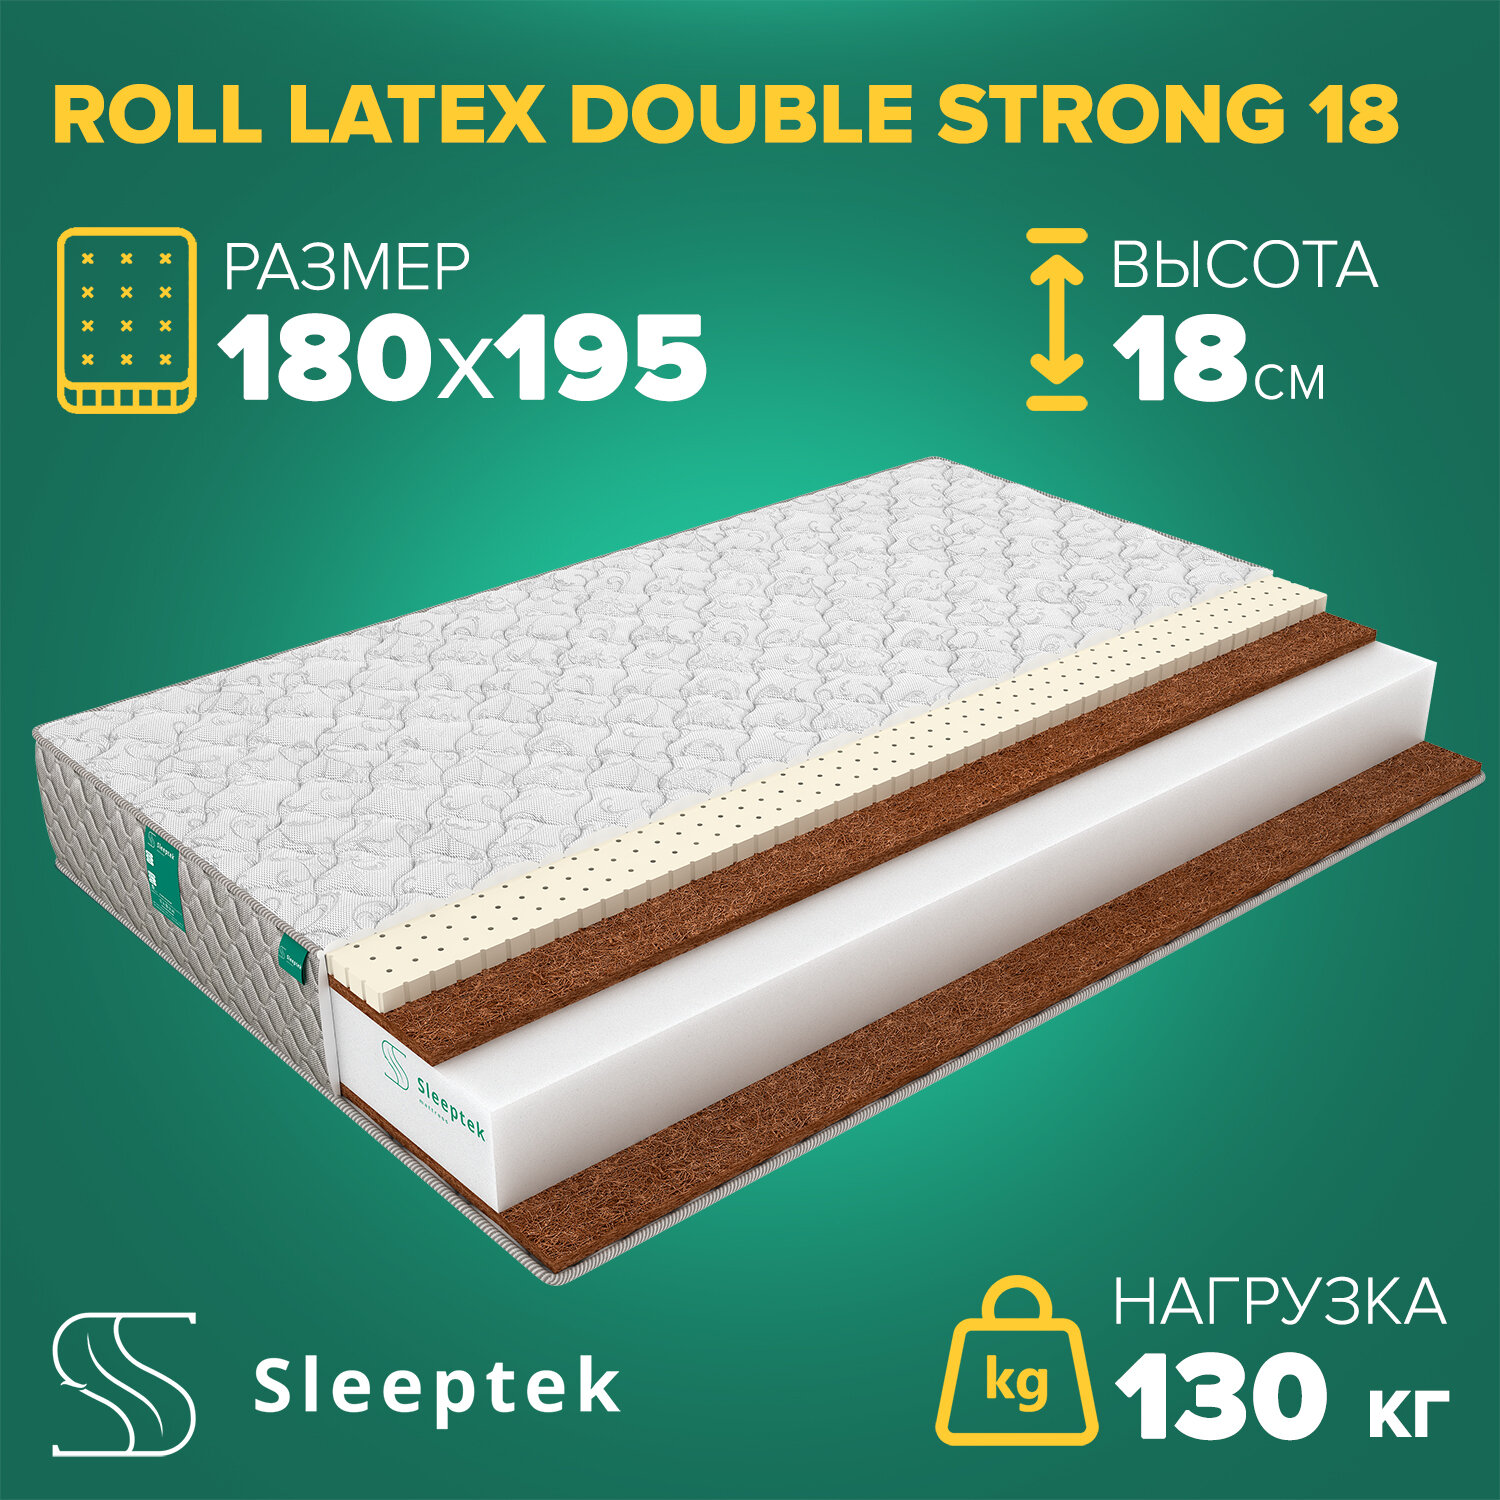 Матрас Sleeptek Roll Latex DoubleStrong 18 180х195